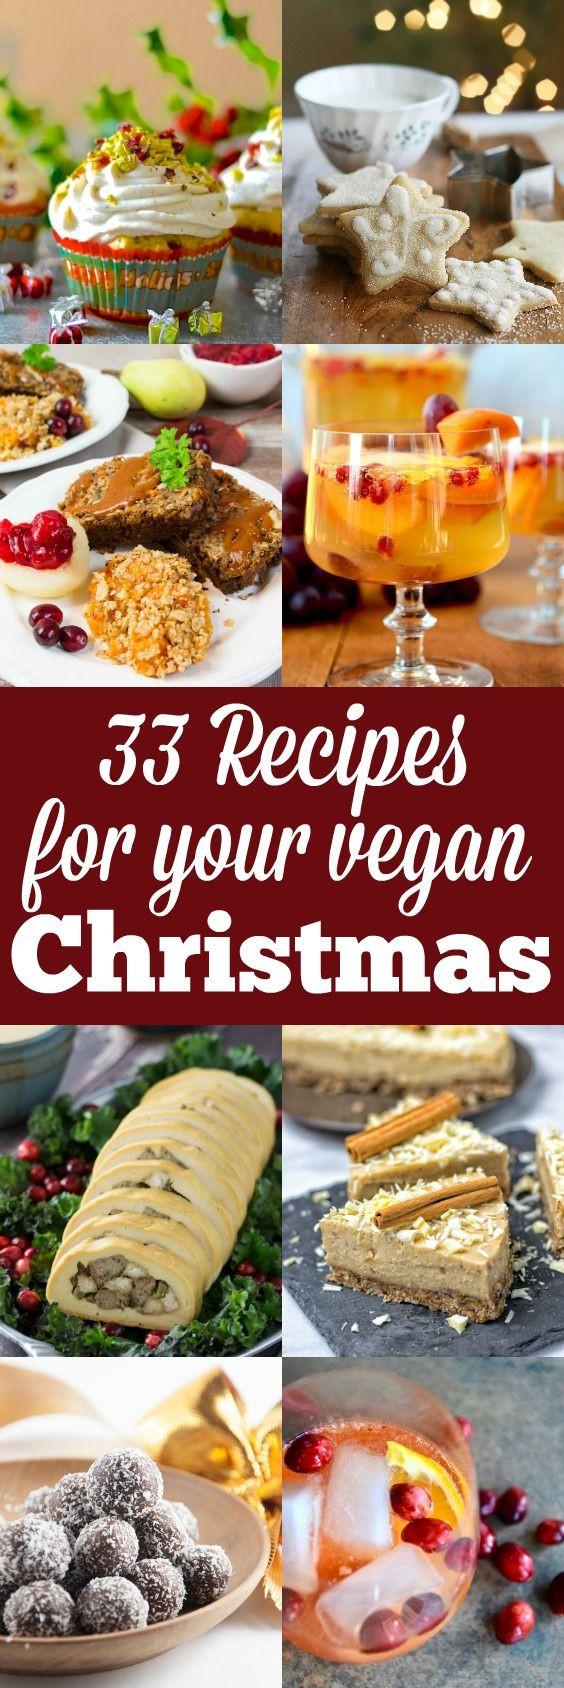 Vegetarian Recipes For Christmas
 Best 25 Vegan christmas ideas on Pinterest